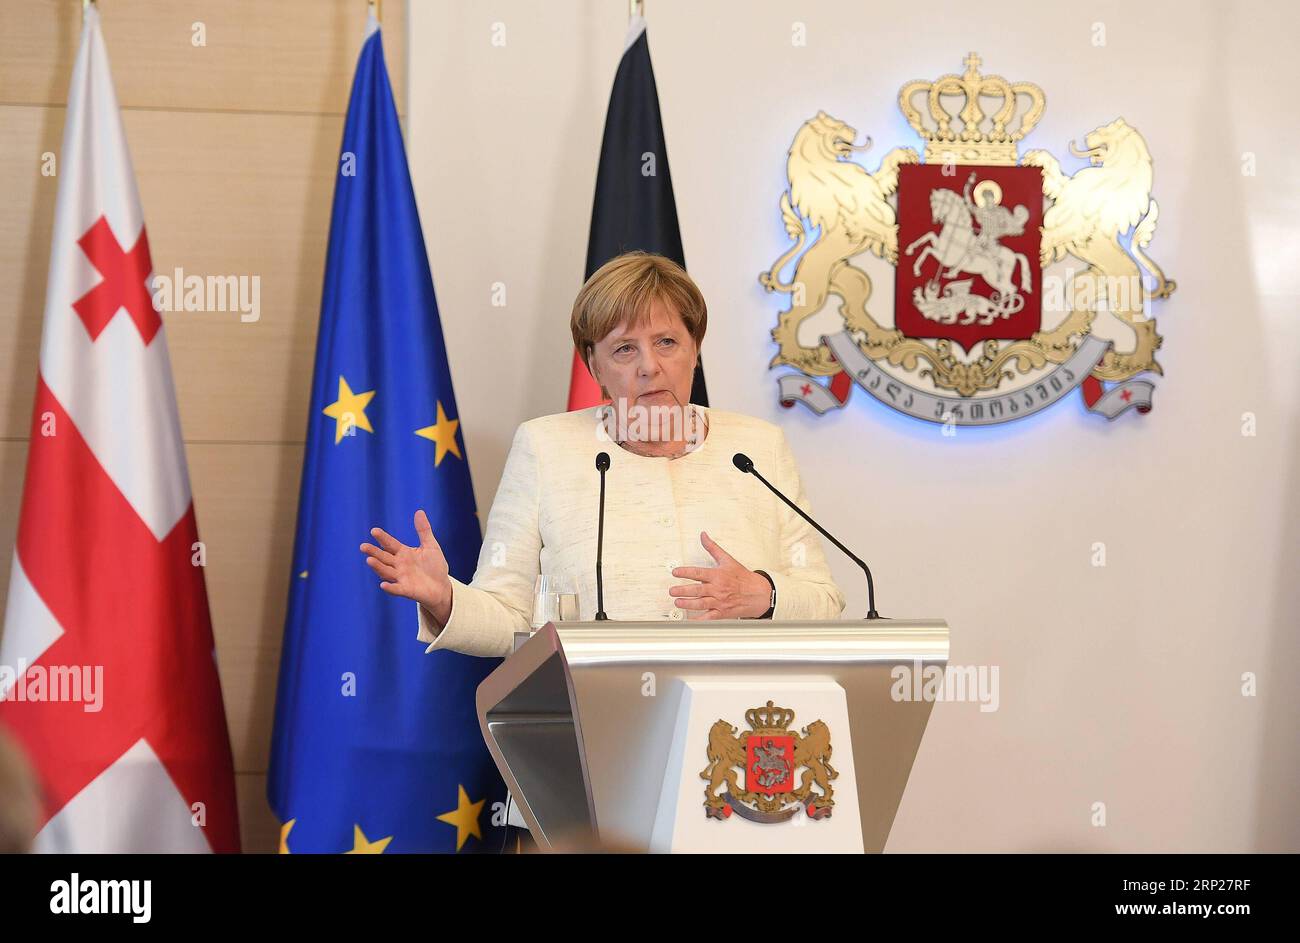 (180823) -- TIFLIS, 23. Aug. 2018 -- Gastrednerin der deutschen Kanzlerin Angela Merkel spricht auf einer gemeinsamen Pressekonferenz mit der georgischen Ministerpräsidentin Mamuka Bakhtadze (nicht im Bild zu sehen) in Tiflis, Georgien, 23. Aug. 2018. Angela Merkel sagte hier am Donnerstag, Deutschland unterstütze die territoriale Unversehrtheit und Souveränität Georgiens und werde sein Bestes tun, um den Konflikt friedlich beizulegen. ) GEORGIEN-TIFLIS-DEUTSCHLAND-MERKEL-BESUCH KulumbegashvilixTamuna PUBLICATIONxNOTxINxCHN Stockfoto